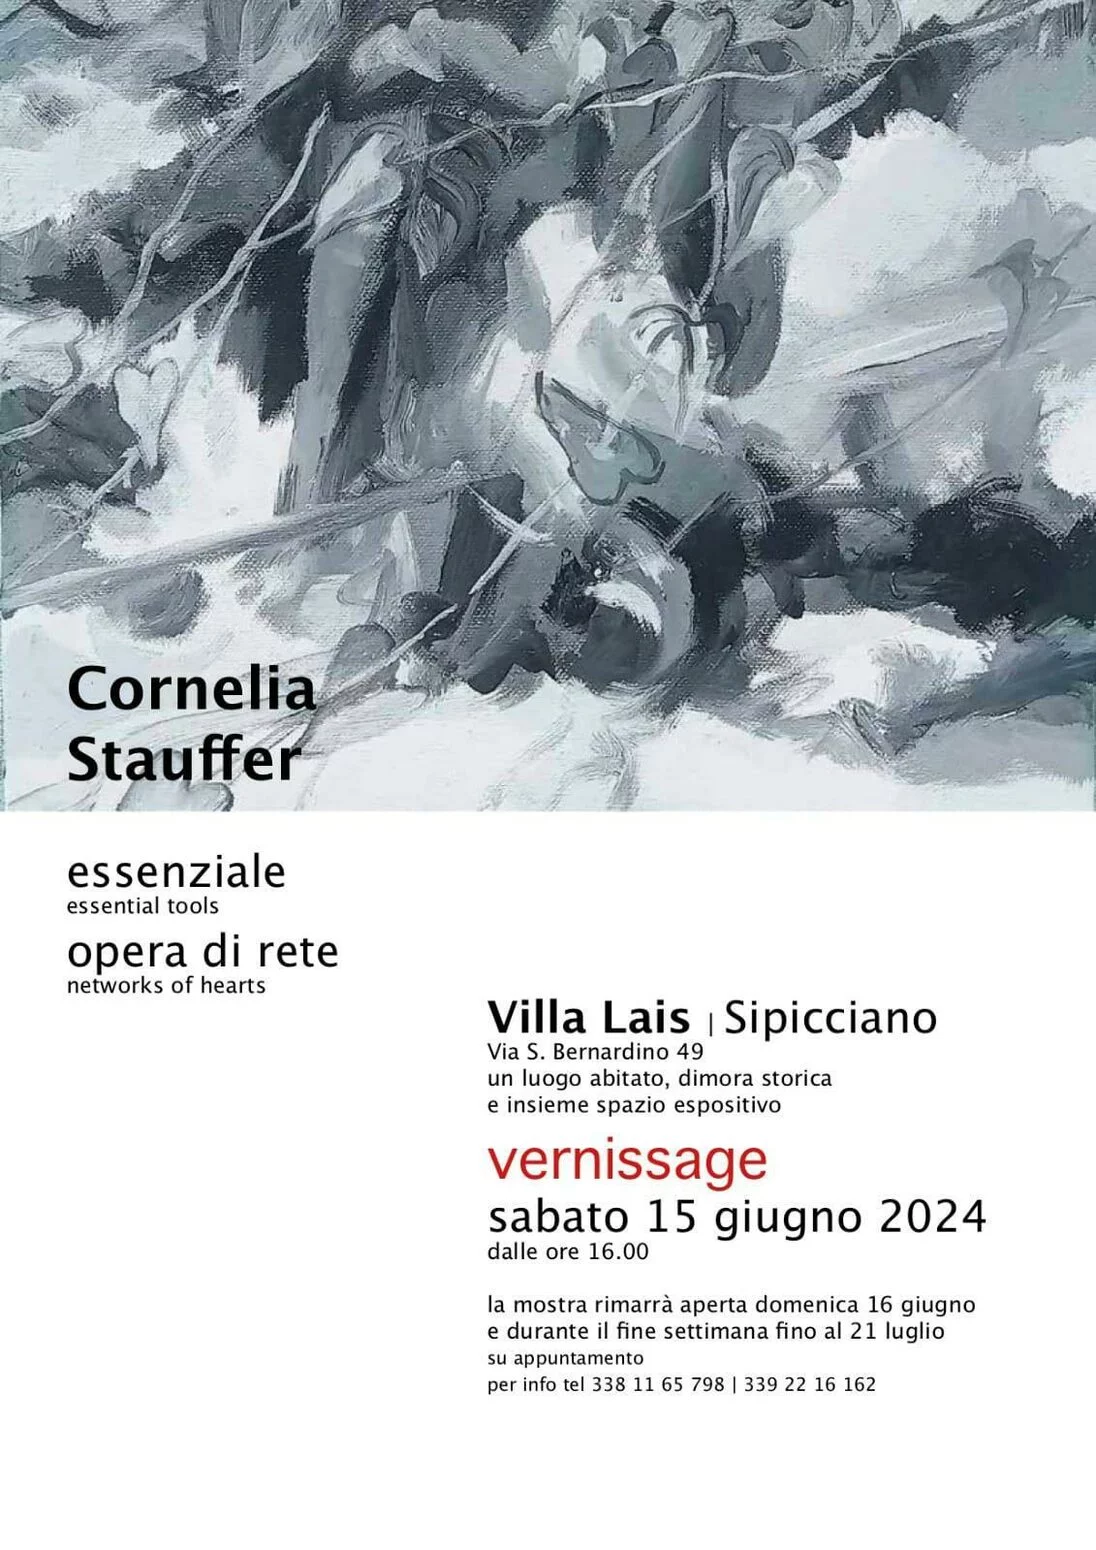 Cornelia Stauffer. Essenziale & Opera di Rete